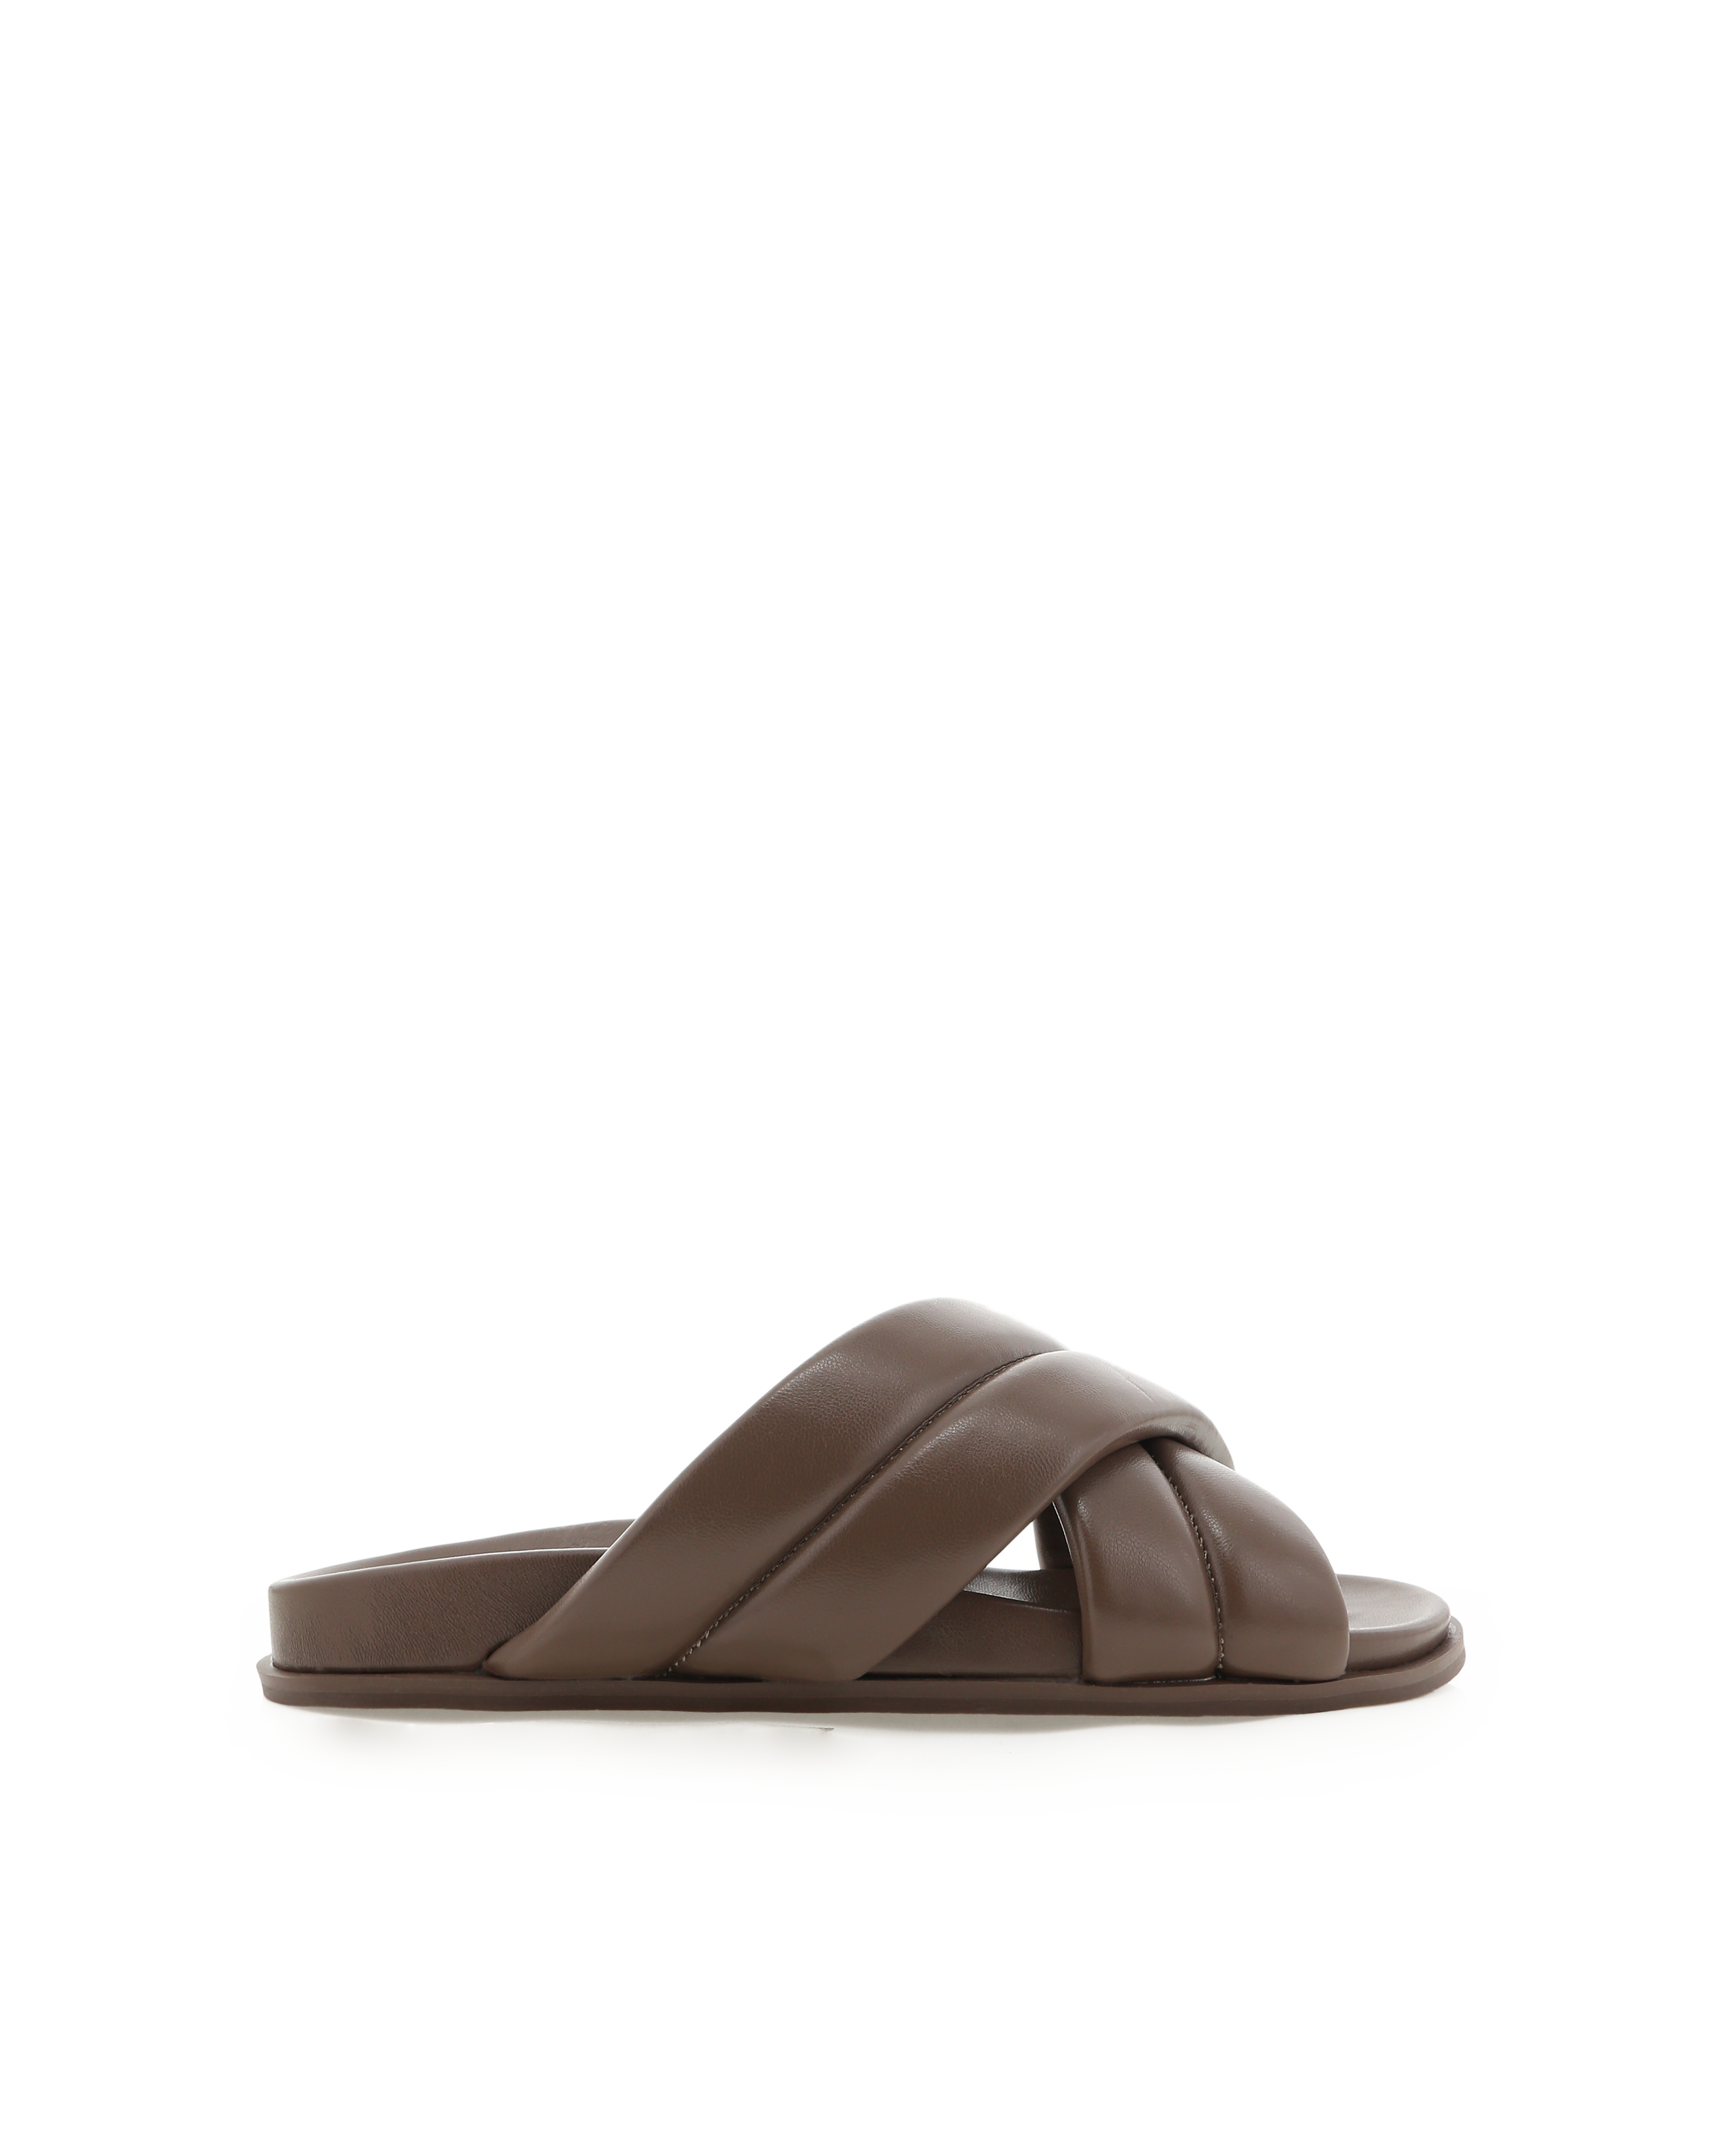 Fenmore Sandals - Mocha